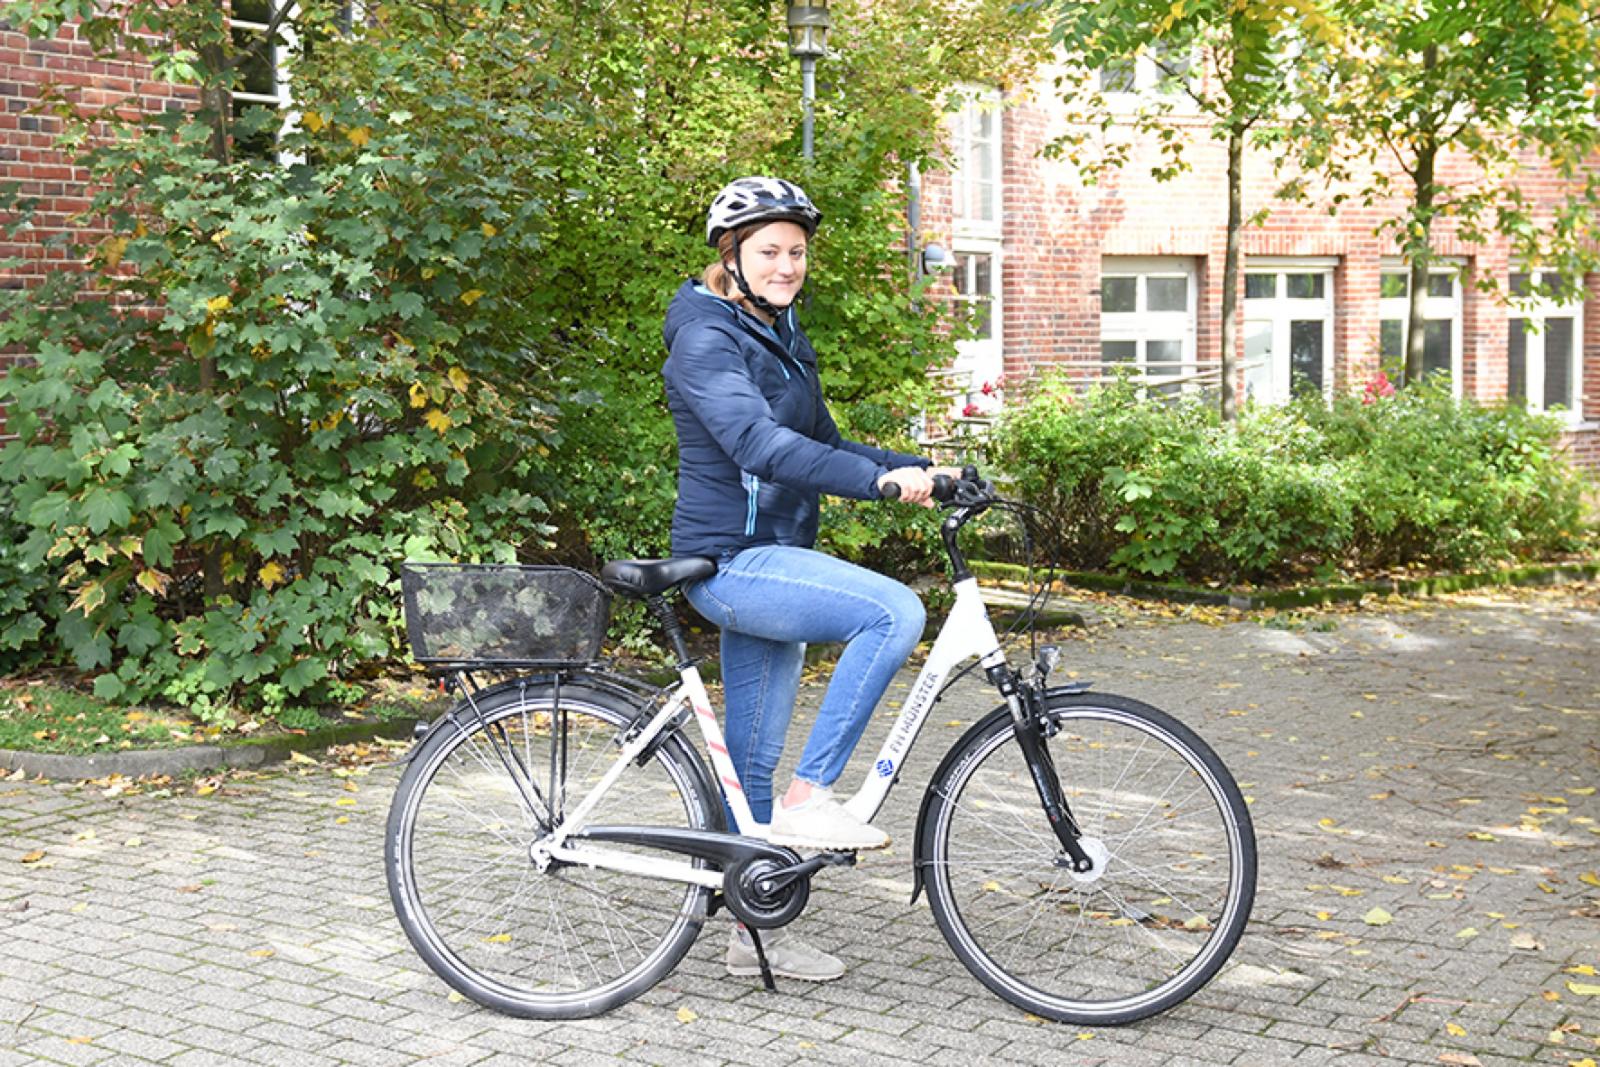 Vom 15. Mai bis zum 15. September zählt jeder auf dem Fahrrad zurückgelegte Kilometer für den Wettbewerb FHahr Rad! – egal ob dienstlich oder in der Freizeit. (Foto: FH Münster/Stefanie Gosejohann)